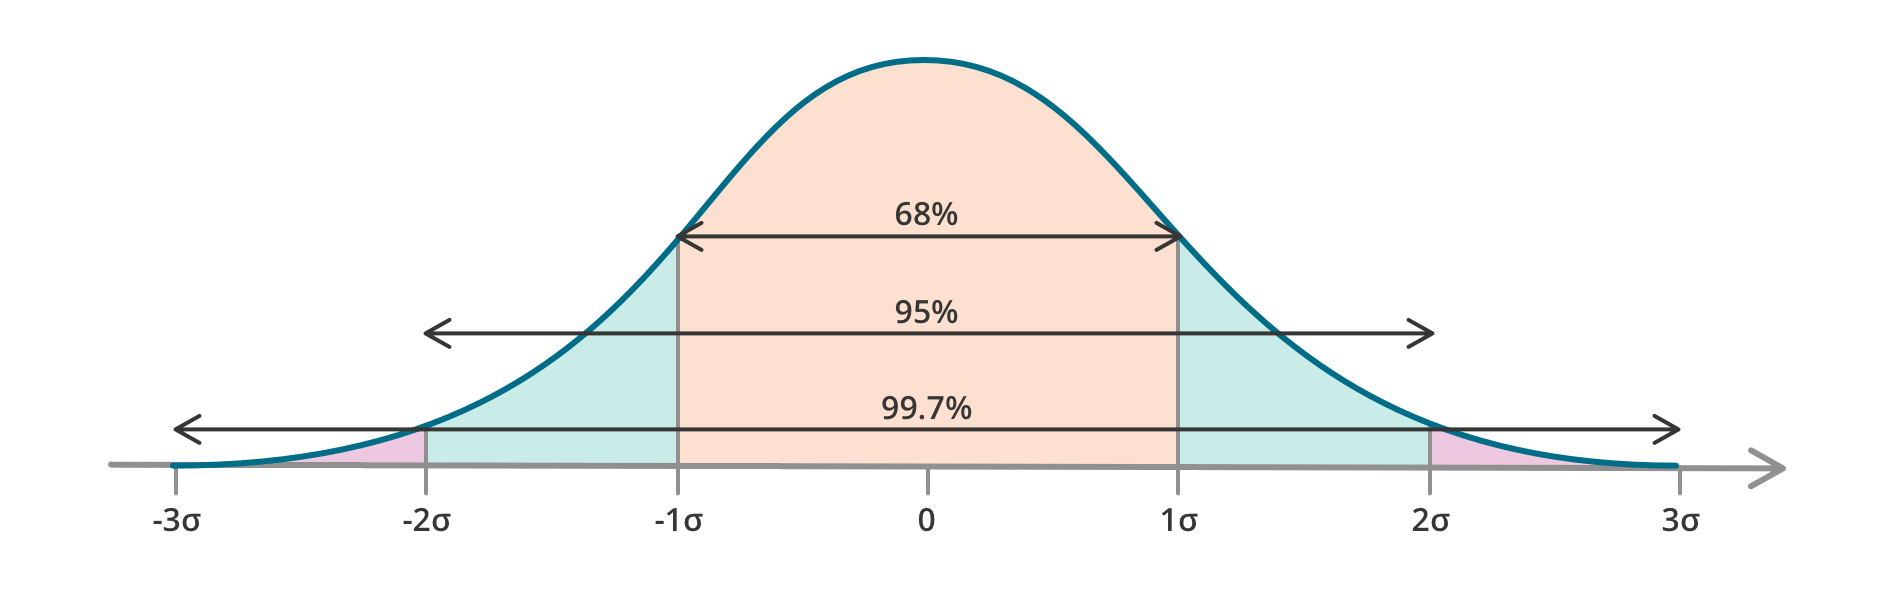 bell curve, details described in text below